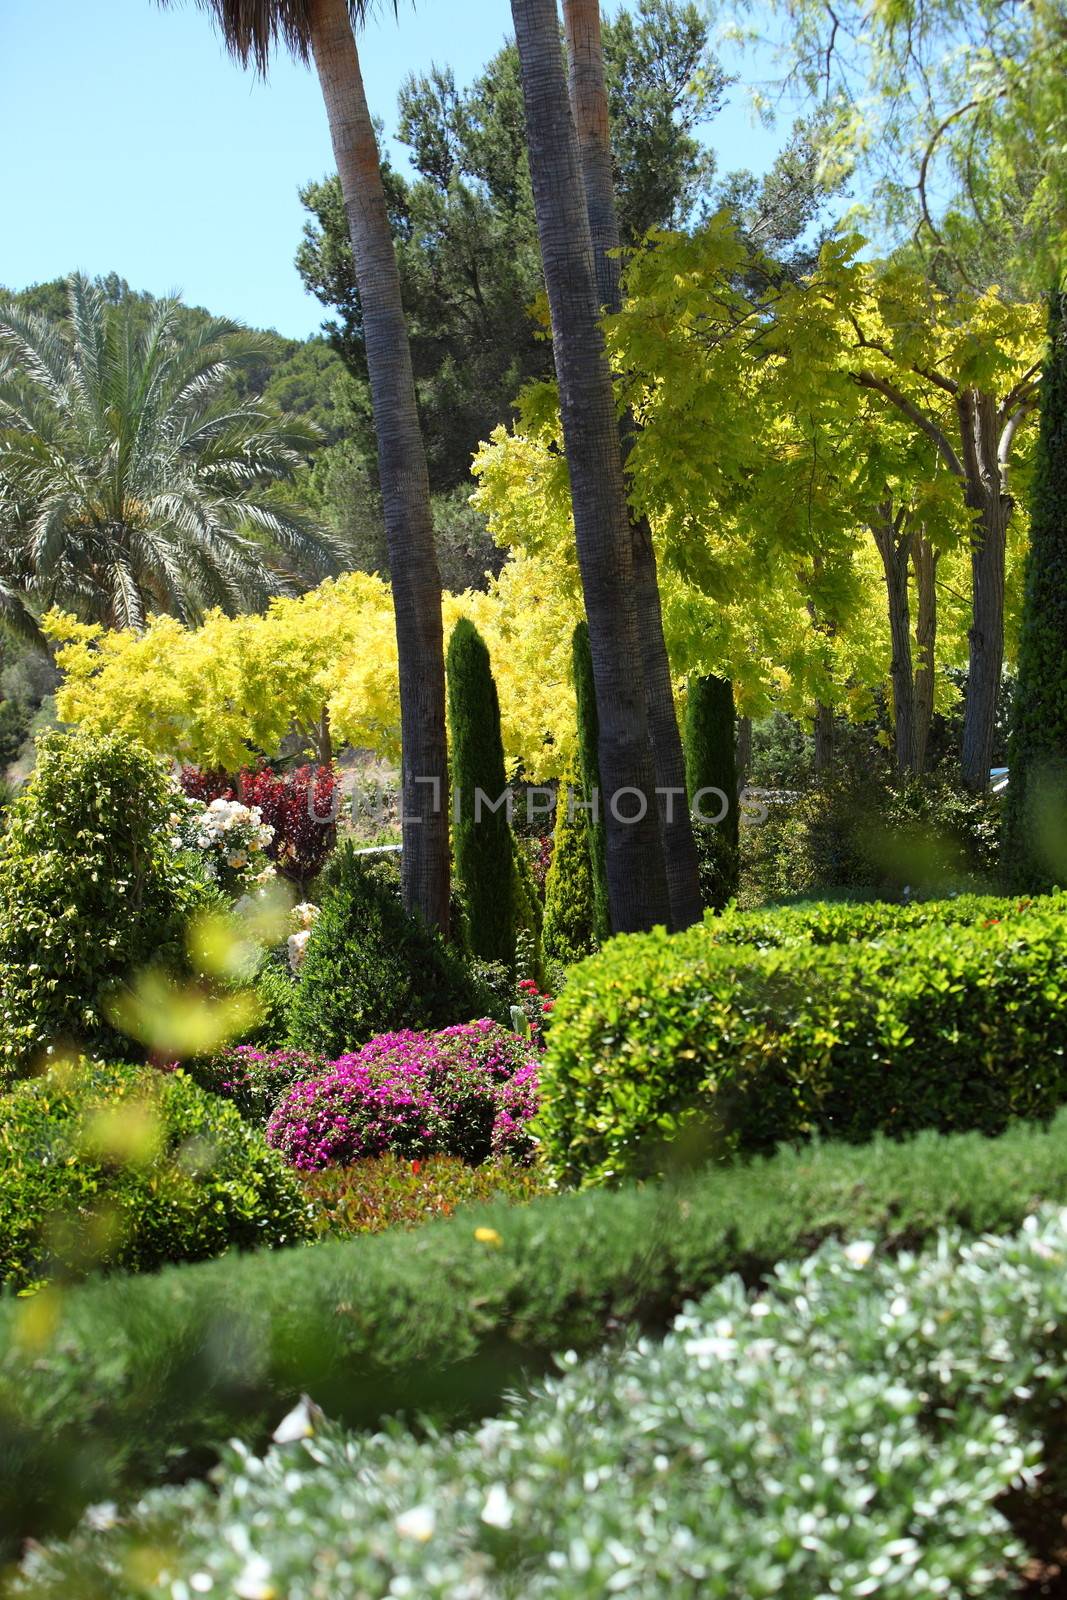 Lush tropical garden by Farina6000